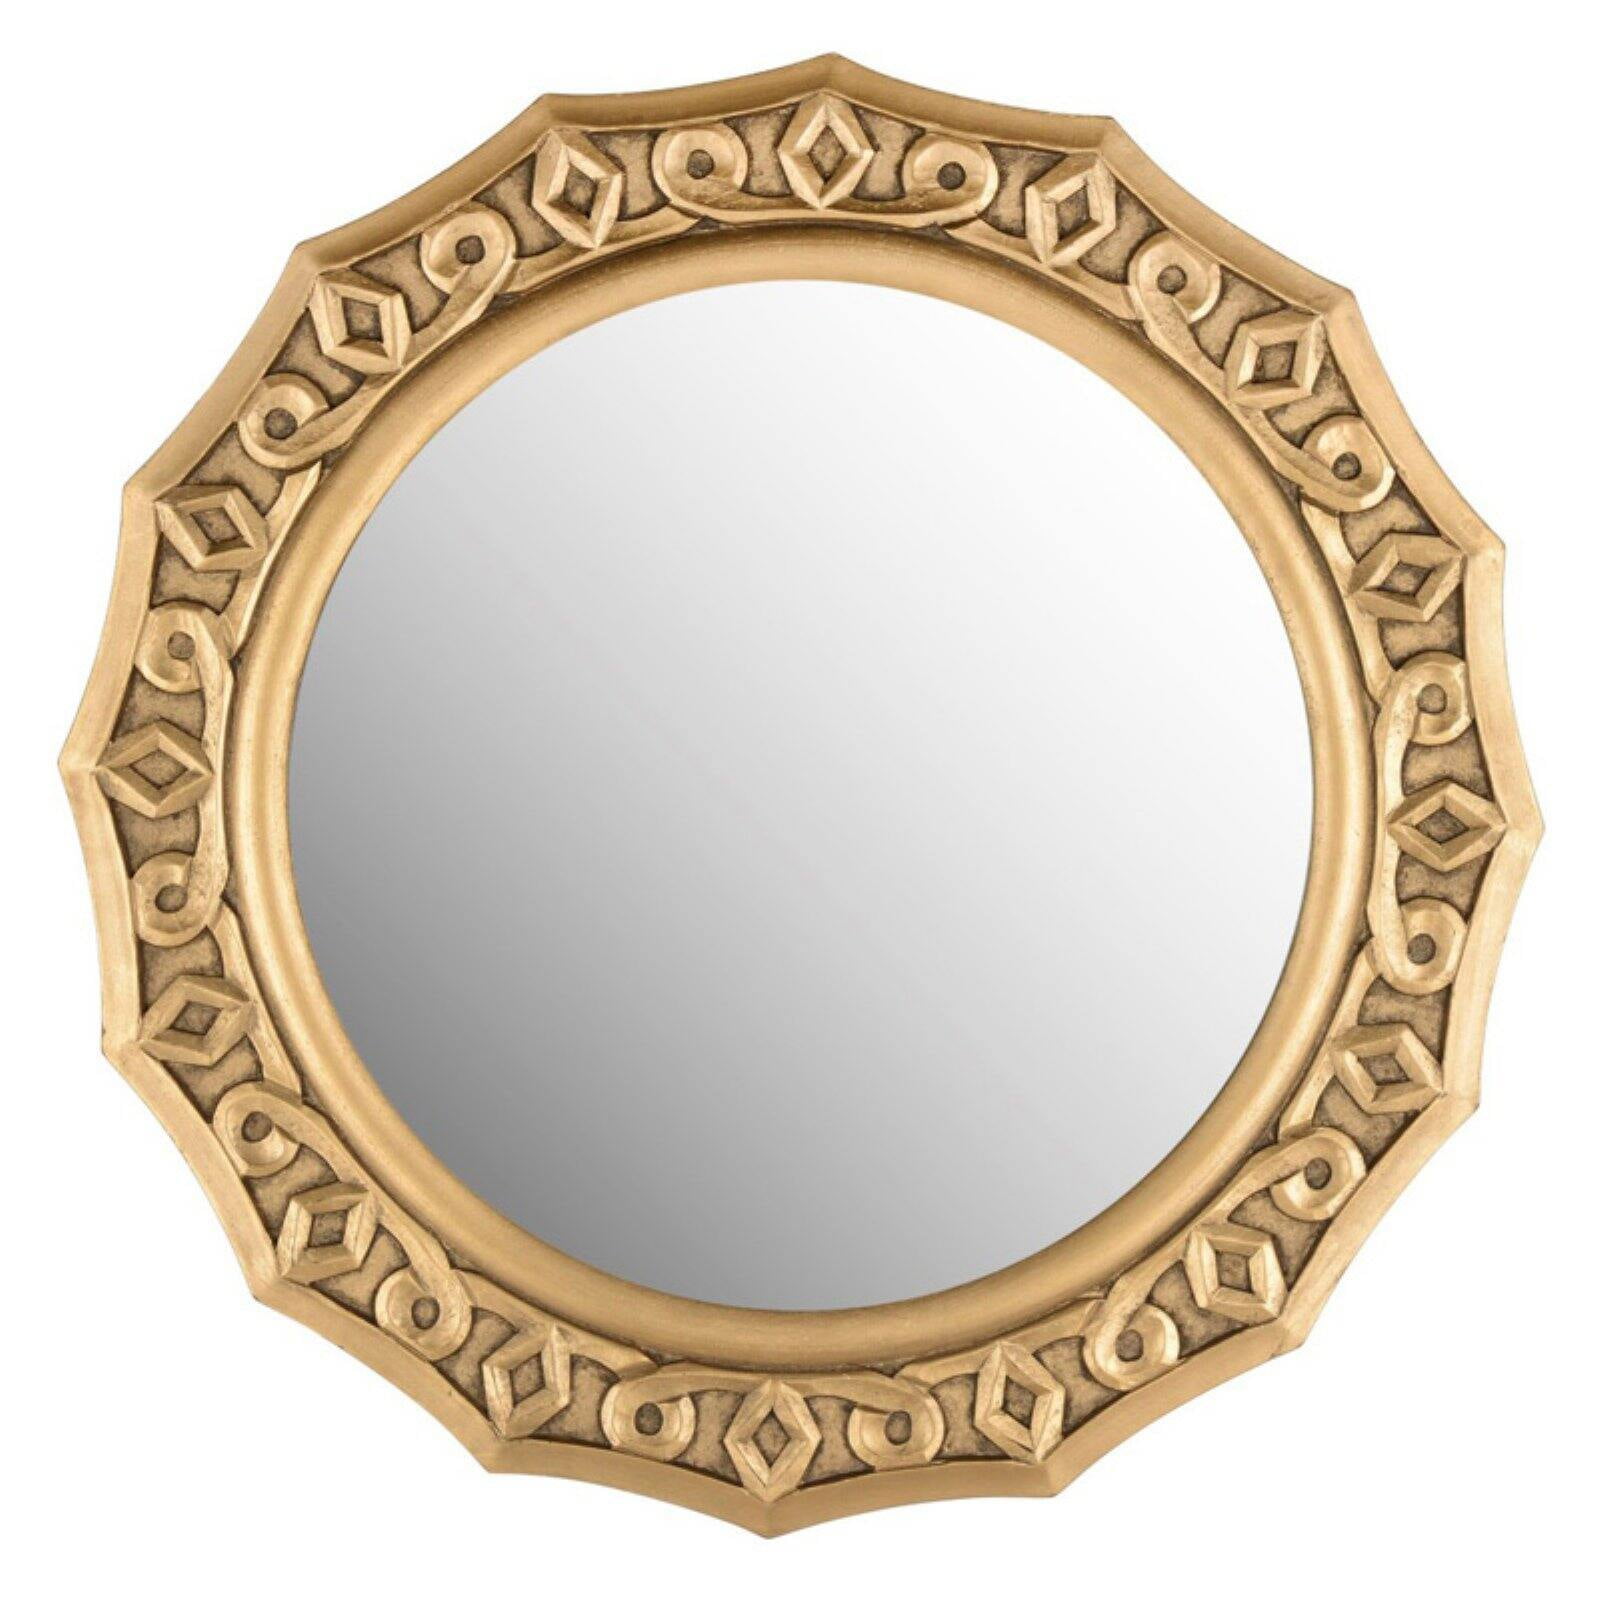 Safavieh Gossamer Lace Gold 25-inch Round Decorative Mirror - 25